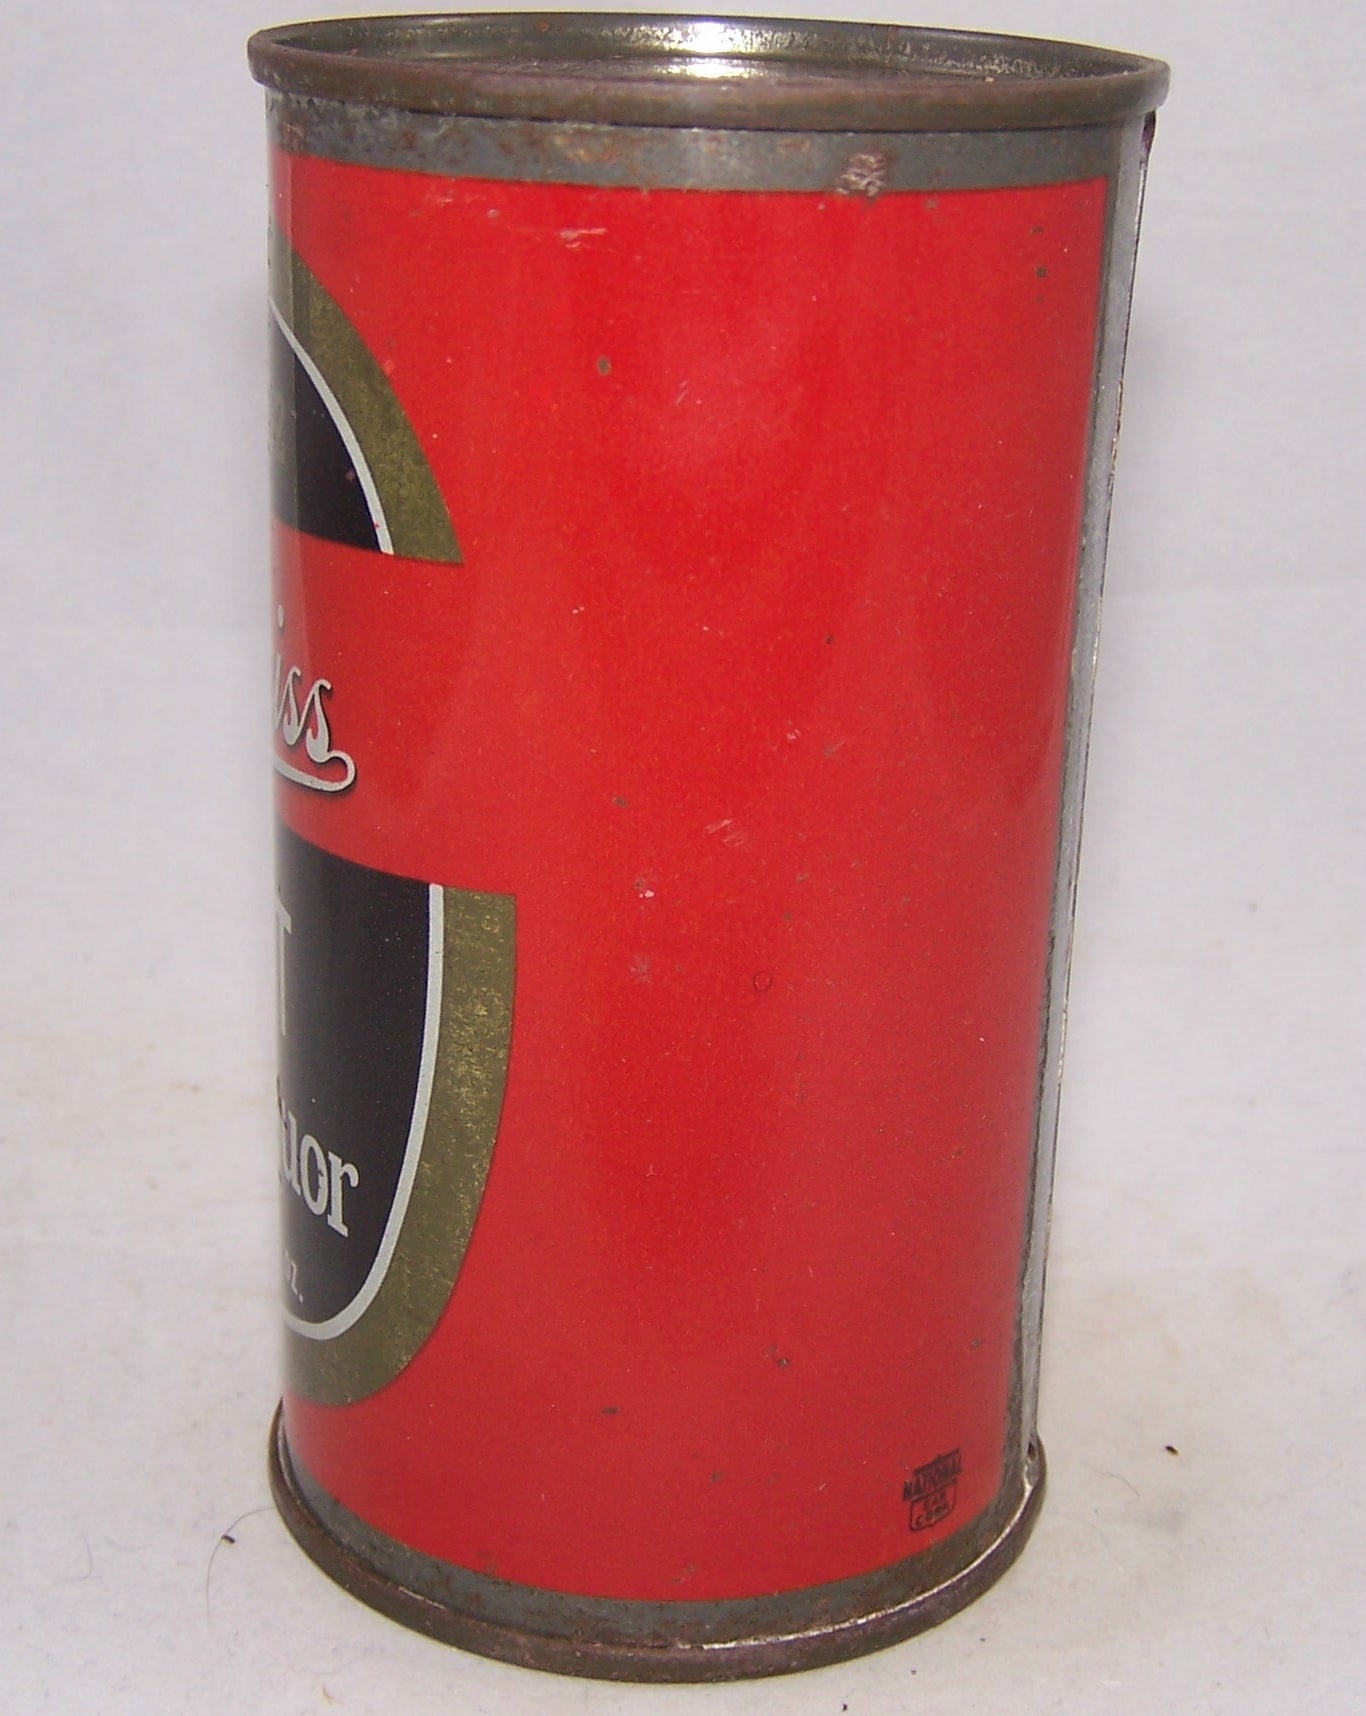 Edelweiss Stout Malt Liquor, USBC 59-10, Grade 1-  Sold on 04/06/18